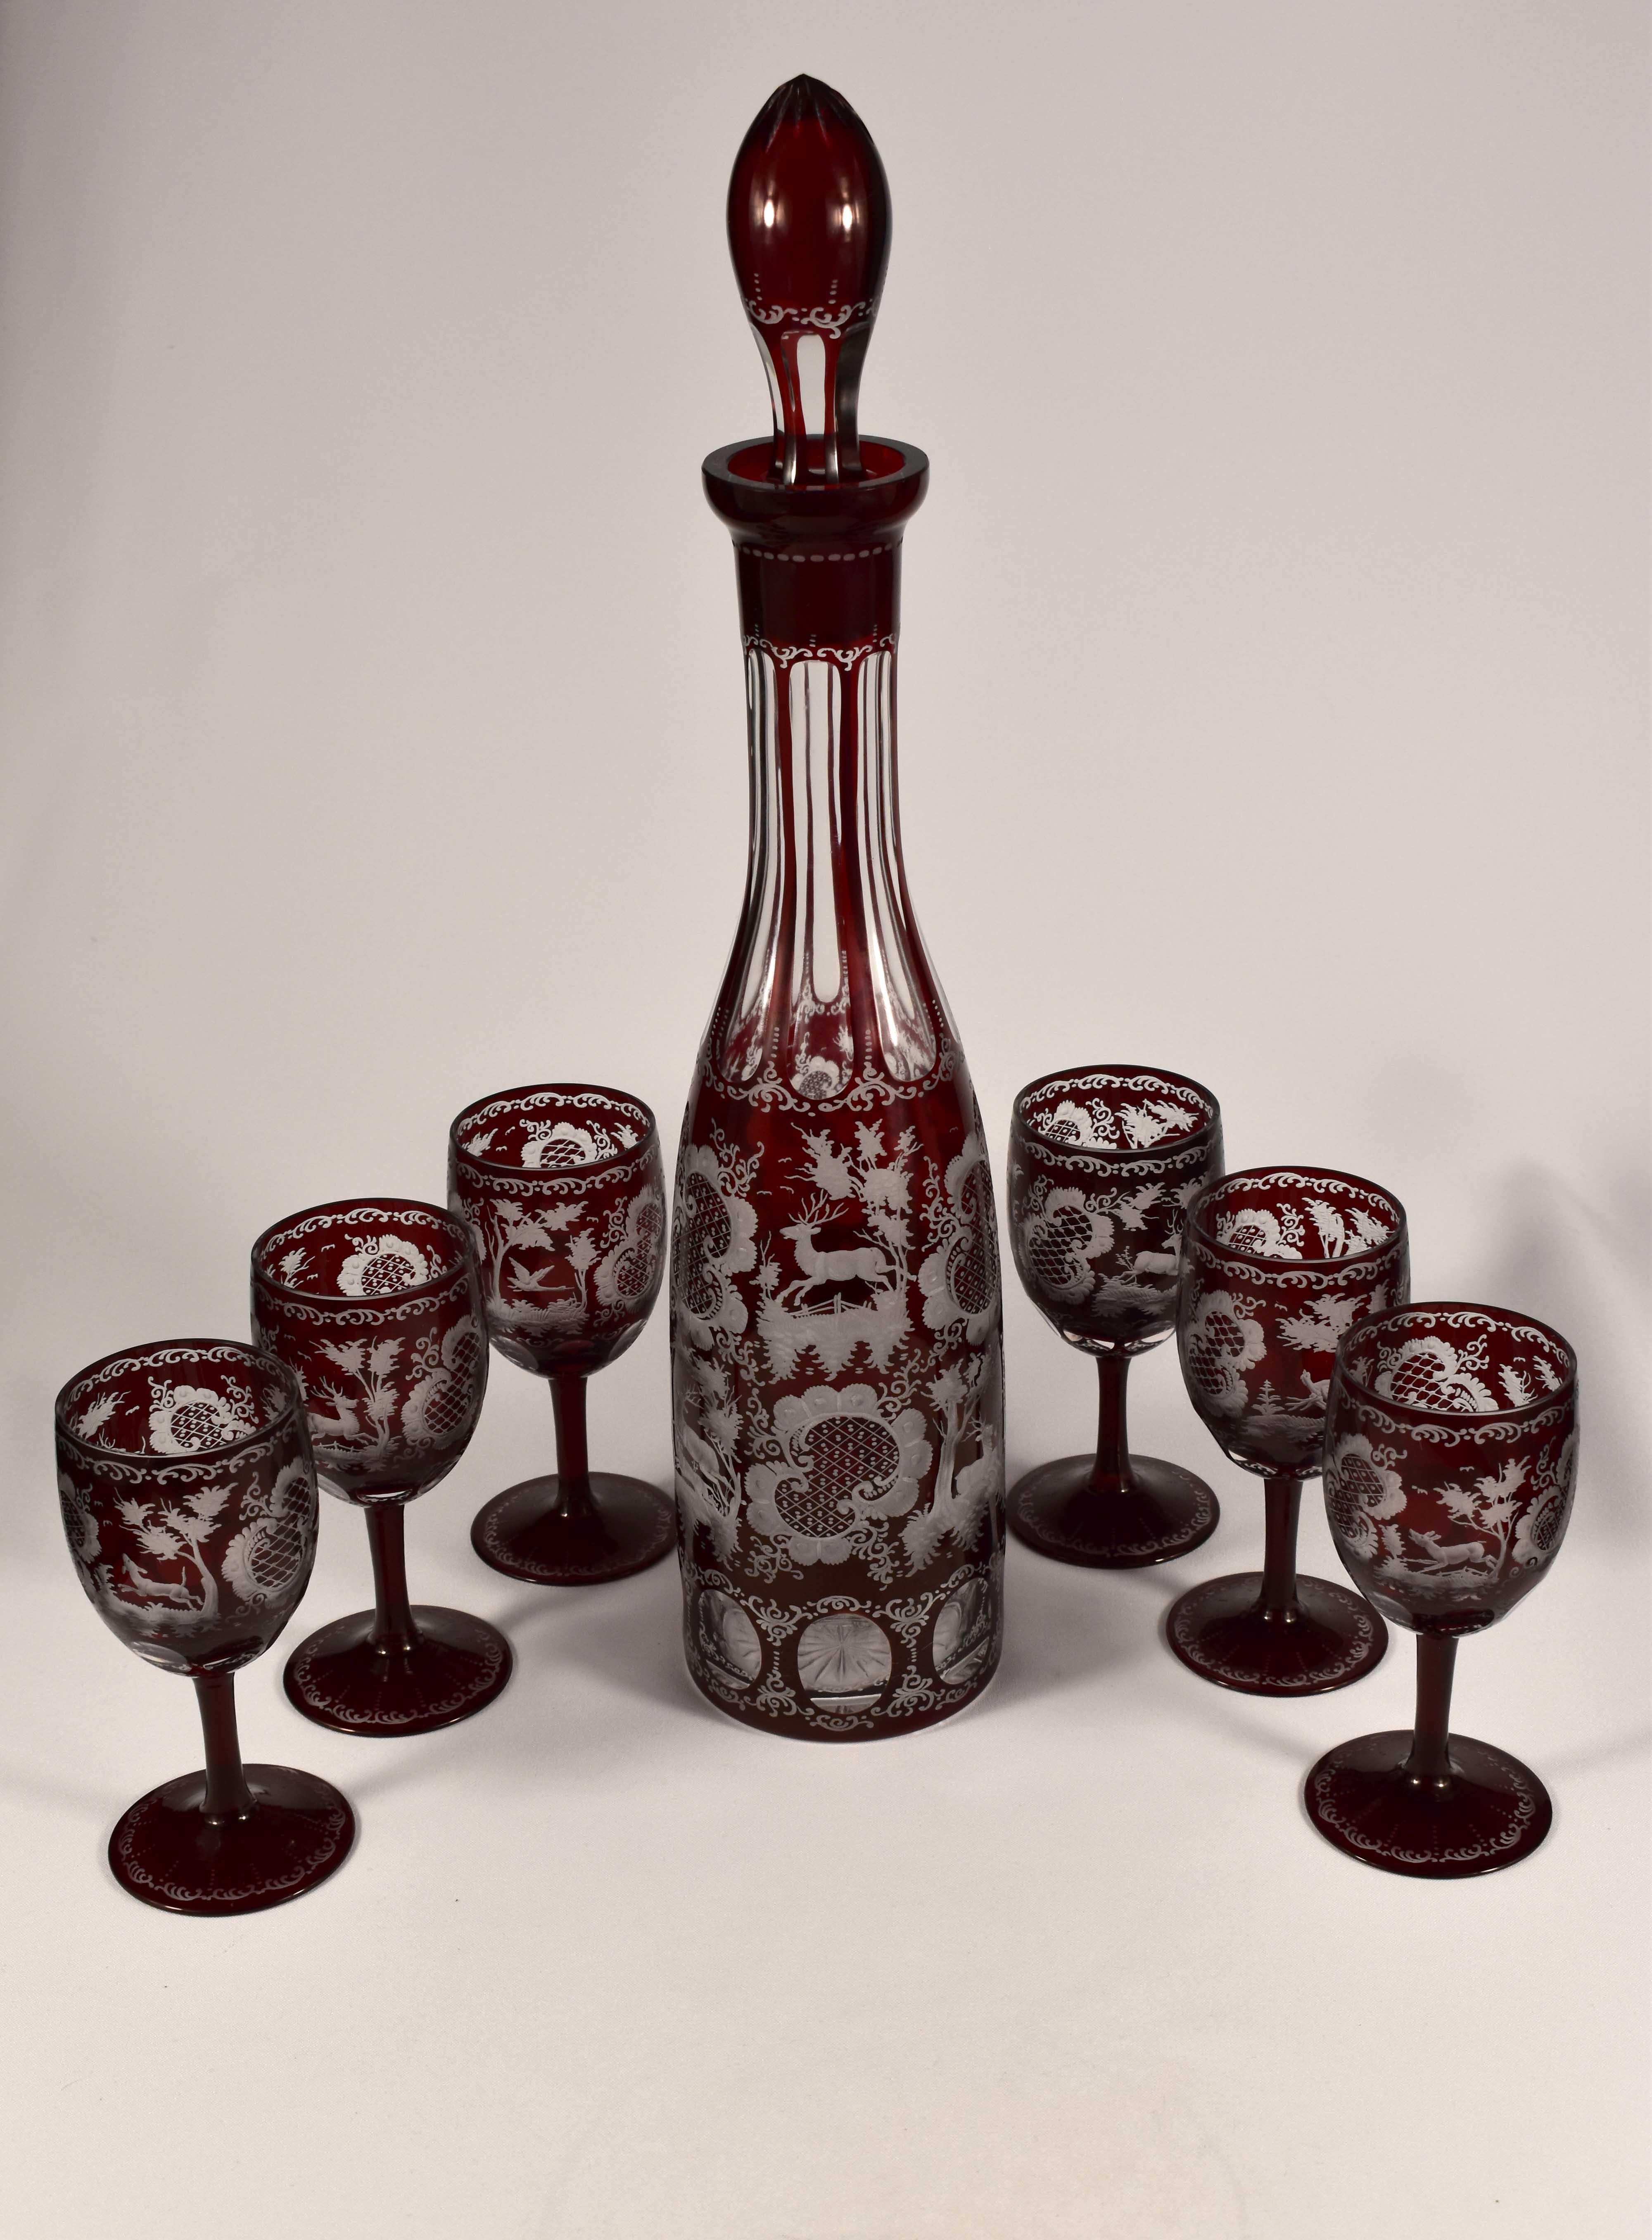 Magnifique ensemble à vin avec carafe. Travail étonnant des verriers tchèques. C'est un verre clair avec une glaçure rubis. La carafe et les gobelets sont taillés, ils sont gravés d'un décor Egermann typique 19-20ème siècle, il s'agit d'une gravure